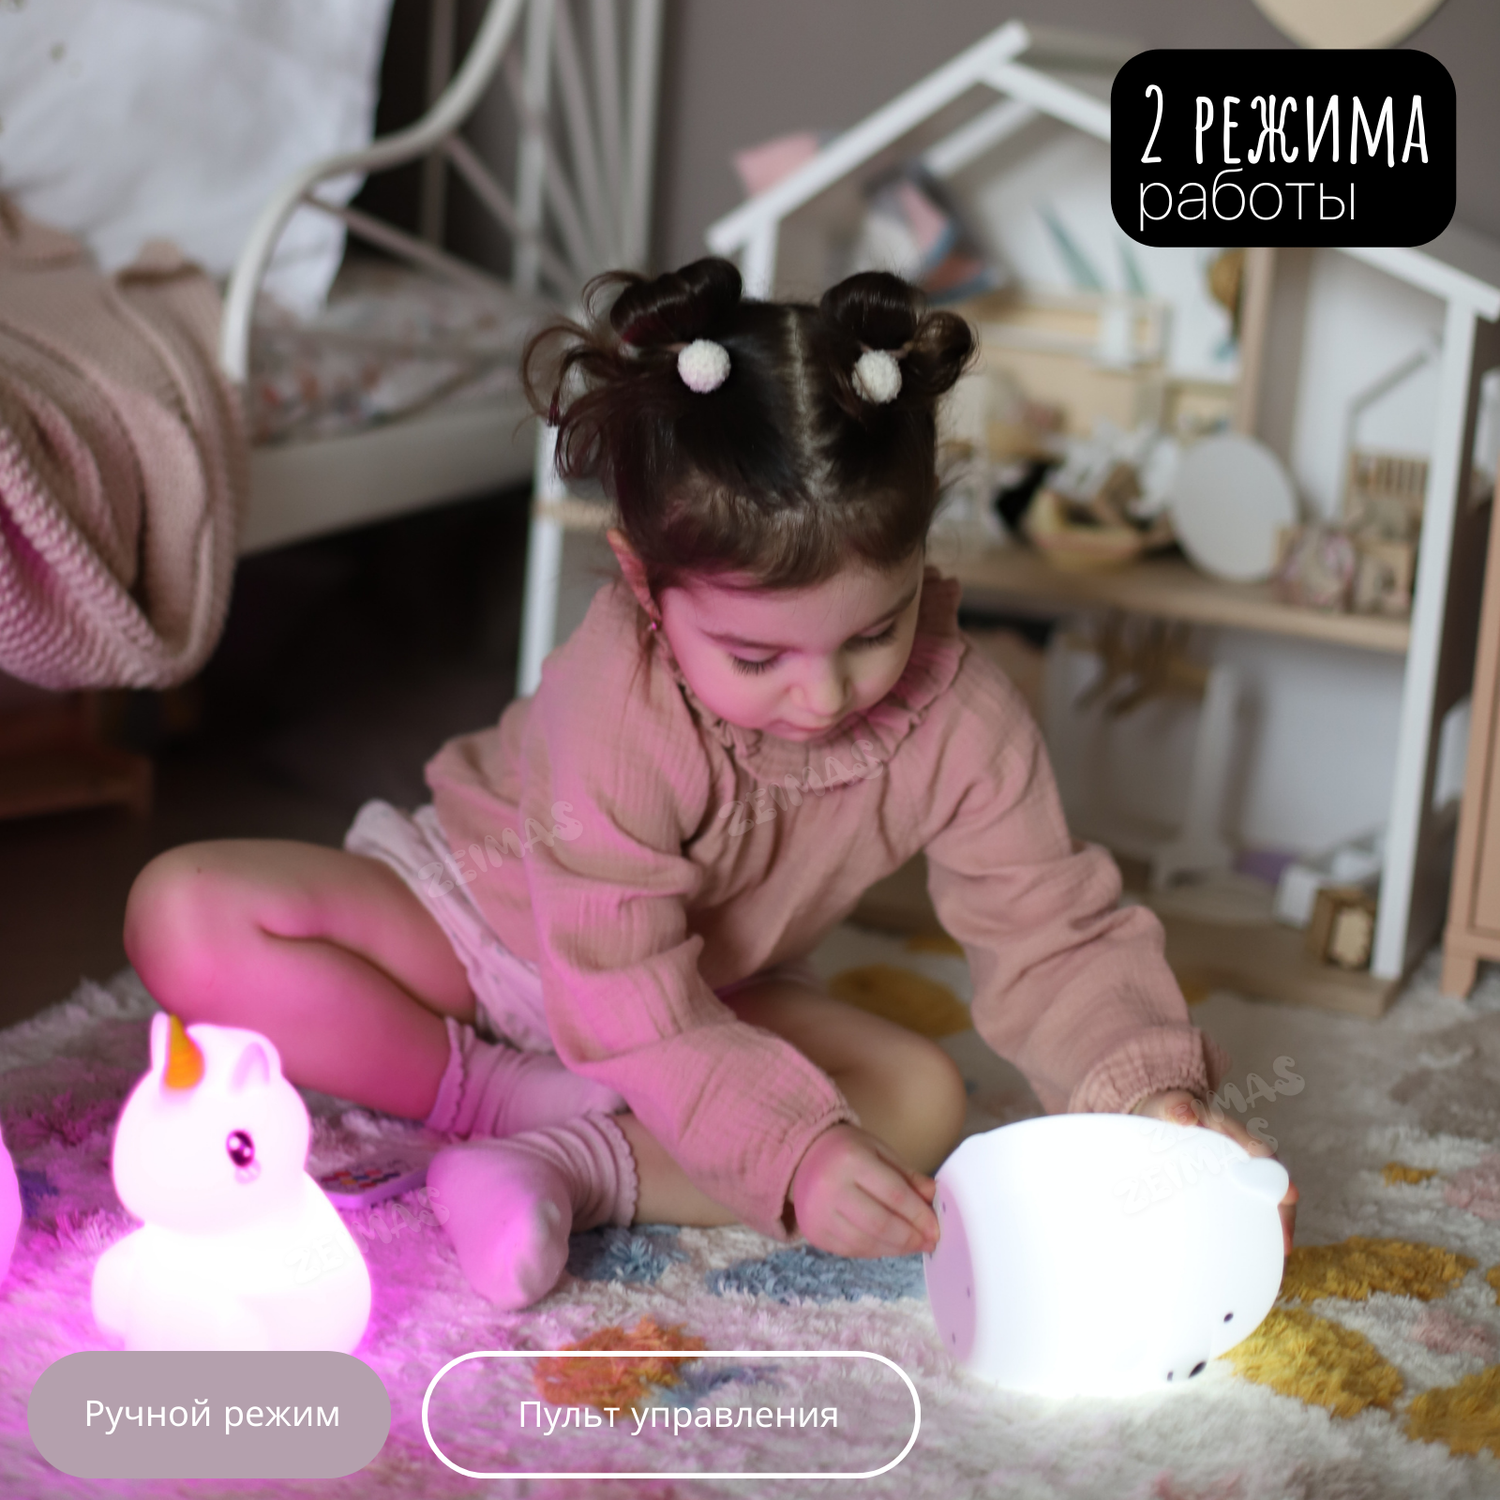 Ночник детский силиконовый Zeimas Медведь светильник развивающая тактильная игрушка - фото 6